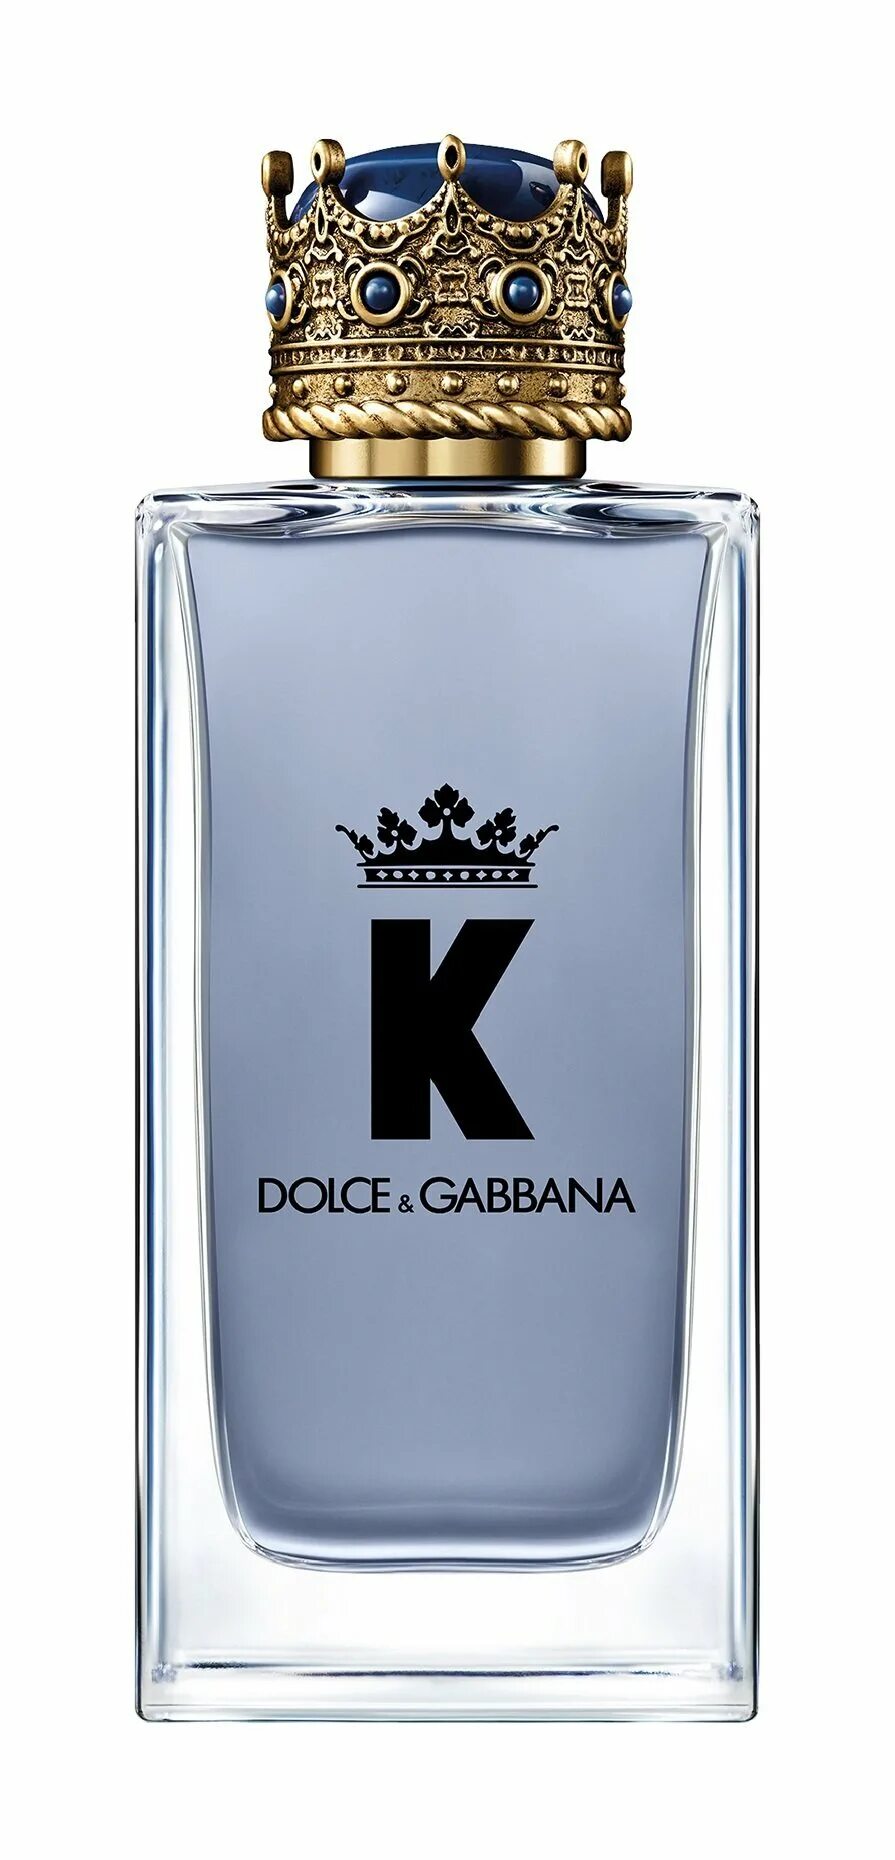 Дольче габбана духи мужские с короной. Dolce & Gabbana by k EDP, 100 ml. •Dolce&Gabbana k EDT 100ml. Dolce Gabbana k King 100ml EDT. Dolce Gabbana King 100ml.